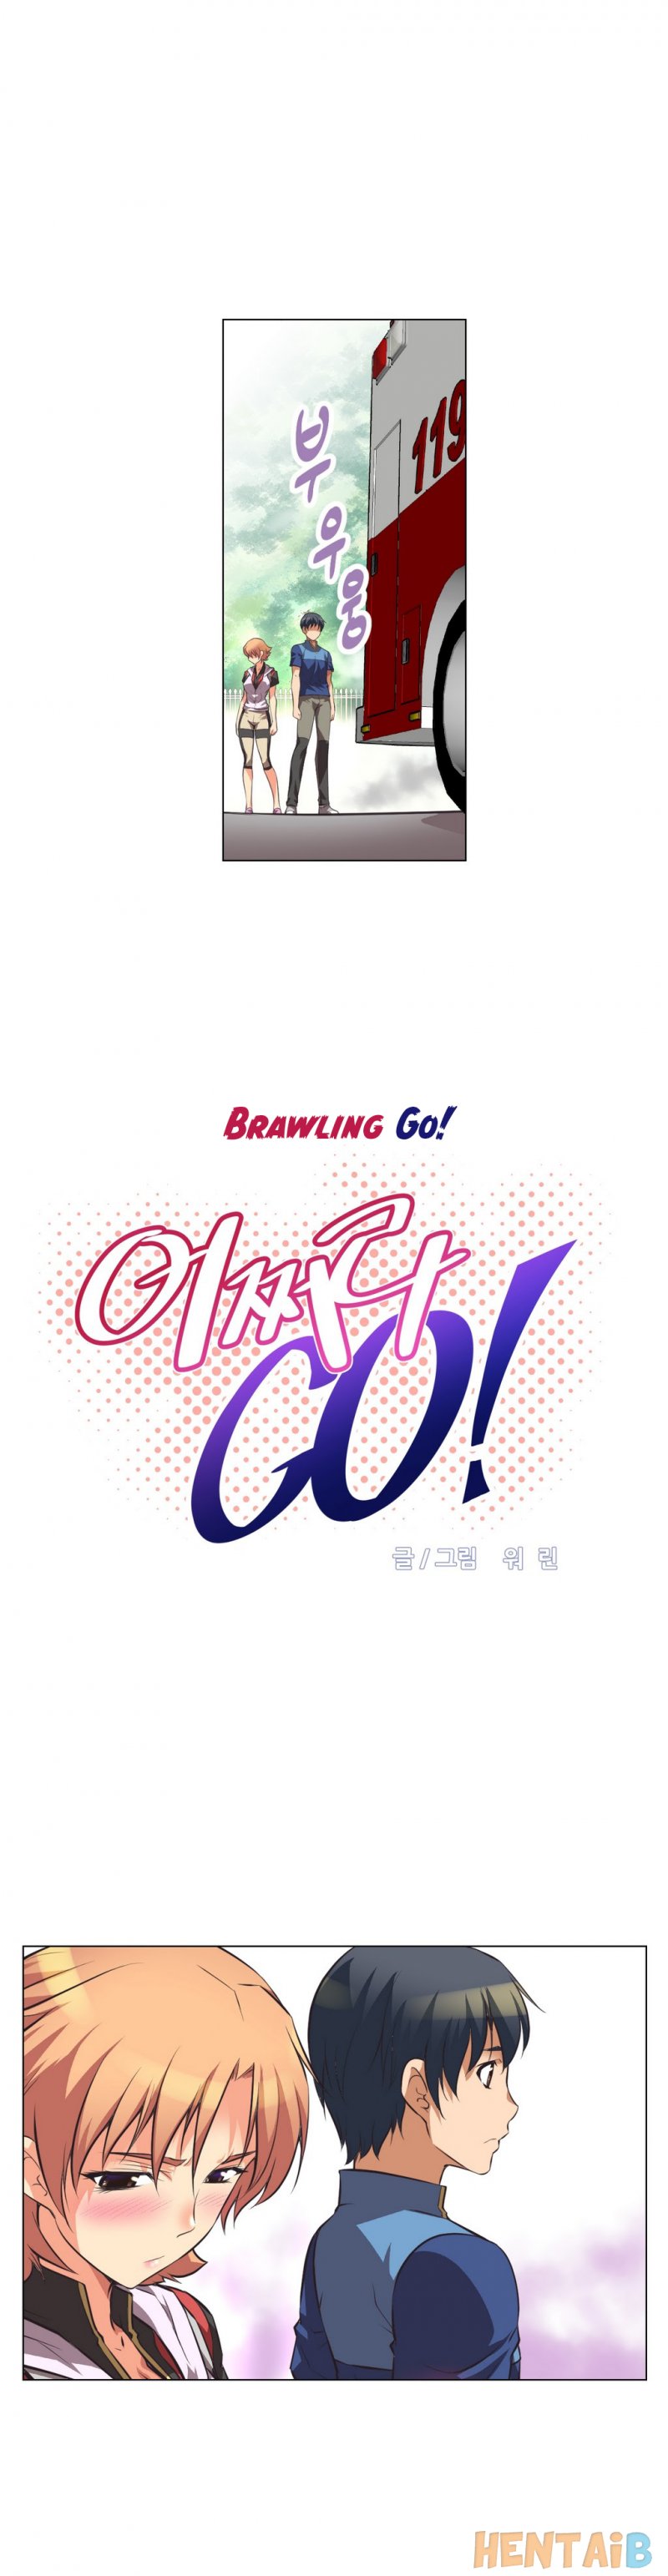 Brawling Go! #03